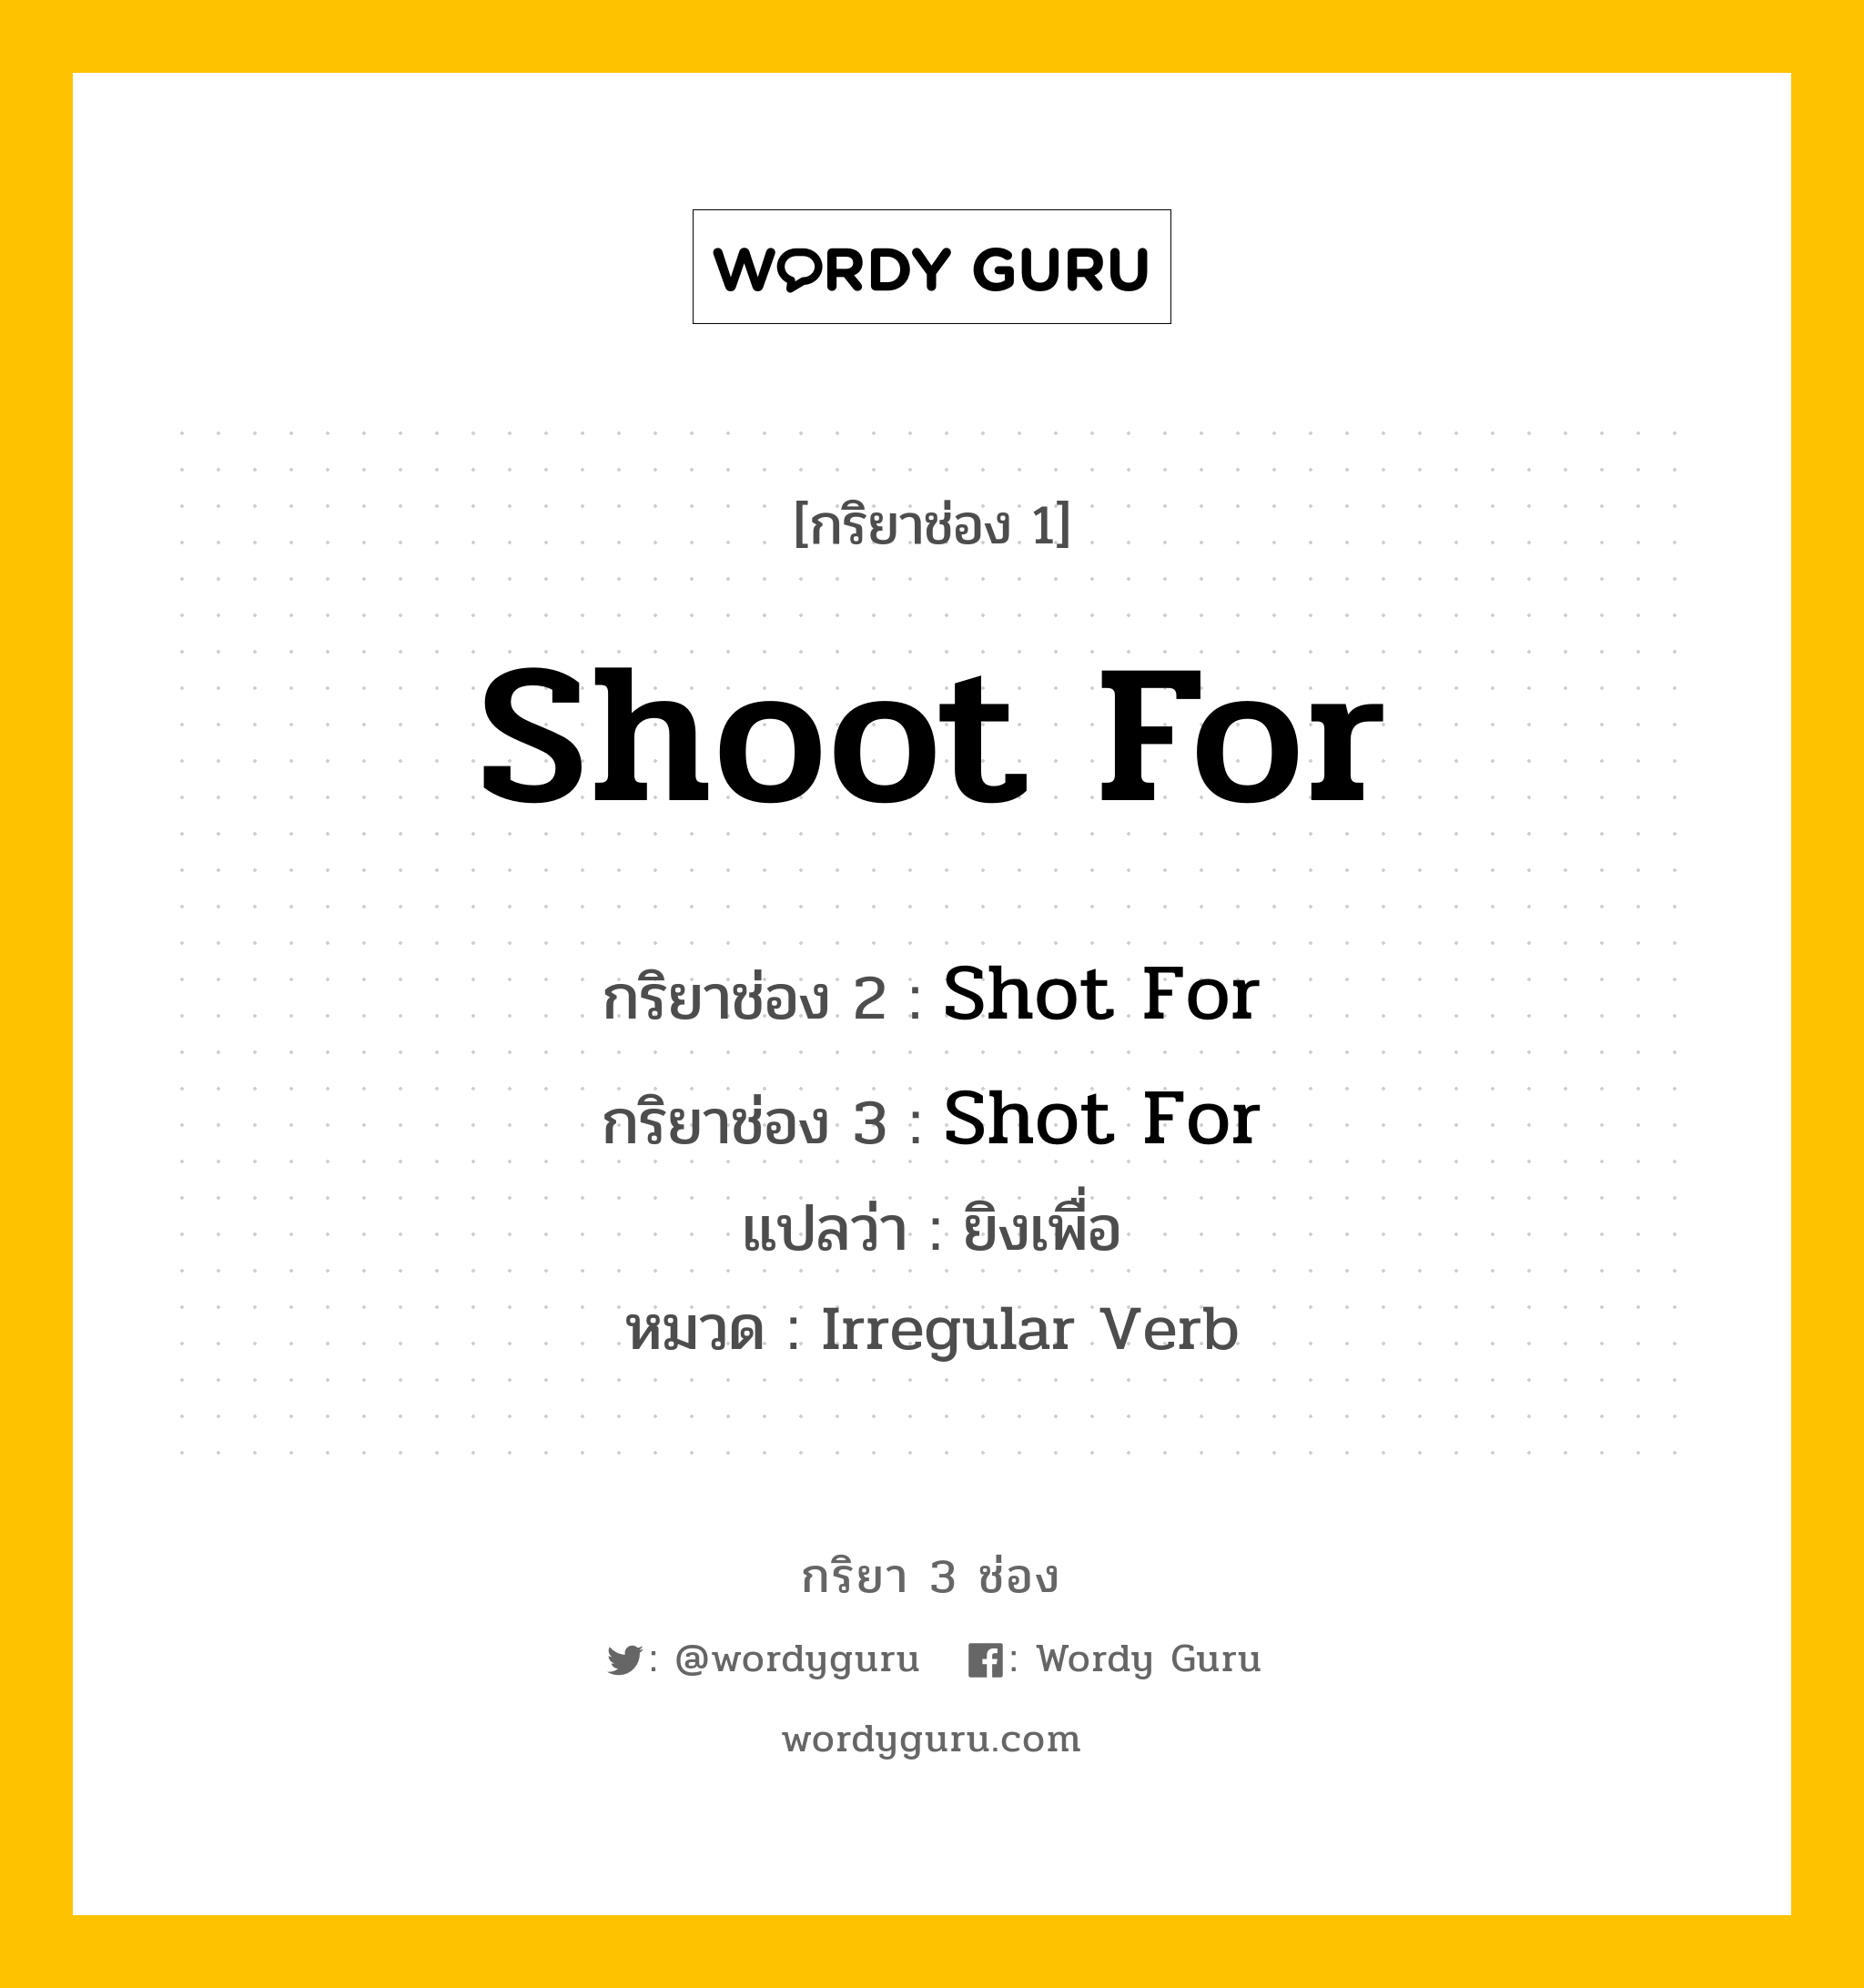 กริยา 3 ช่อง ของ Shoot For คืออะไร? มาดูคำอ่าน คำแปลกันเลย, กริยาช่อง 1 Shoot For กริยาช่อง 2 Shot For กริยาช่อง 3 Shot For แปลว่า ยิงเพื่อ หมวด Irregular Verb หมวด Irregular Verb